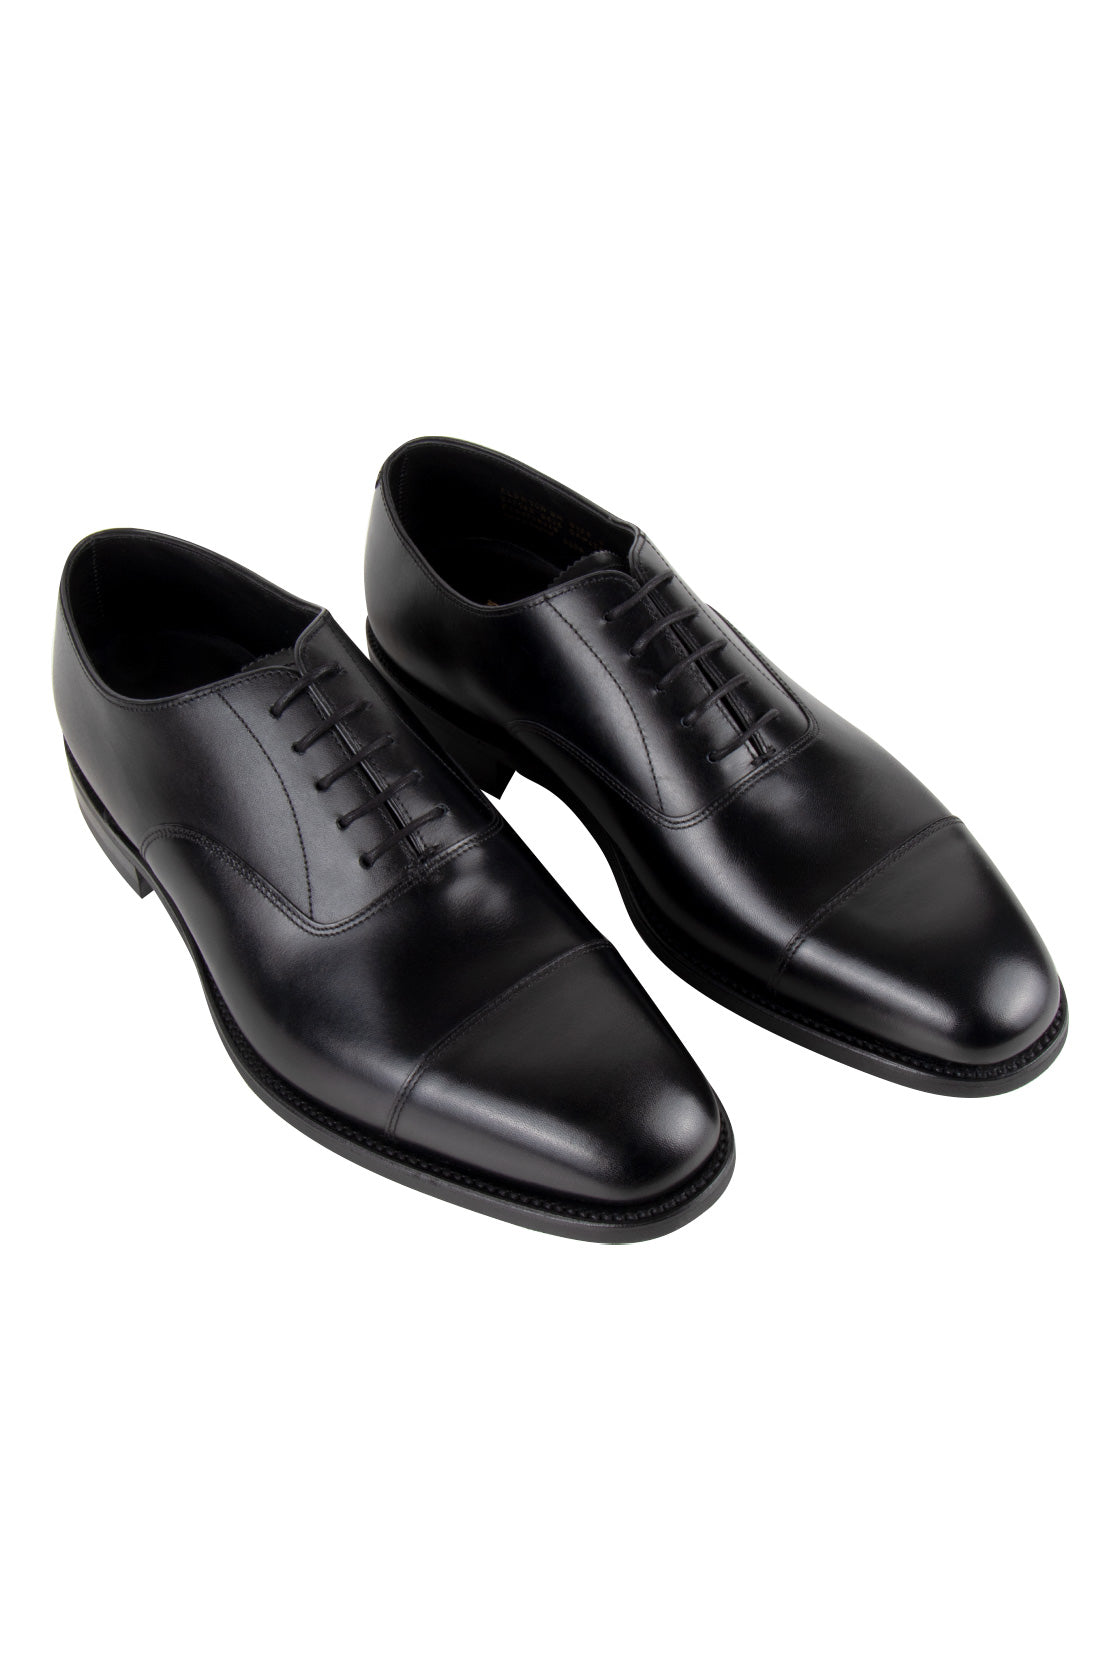 Loake Aldwych Rubber Sole Oxford Shoe Black